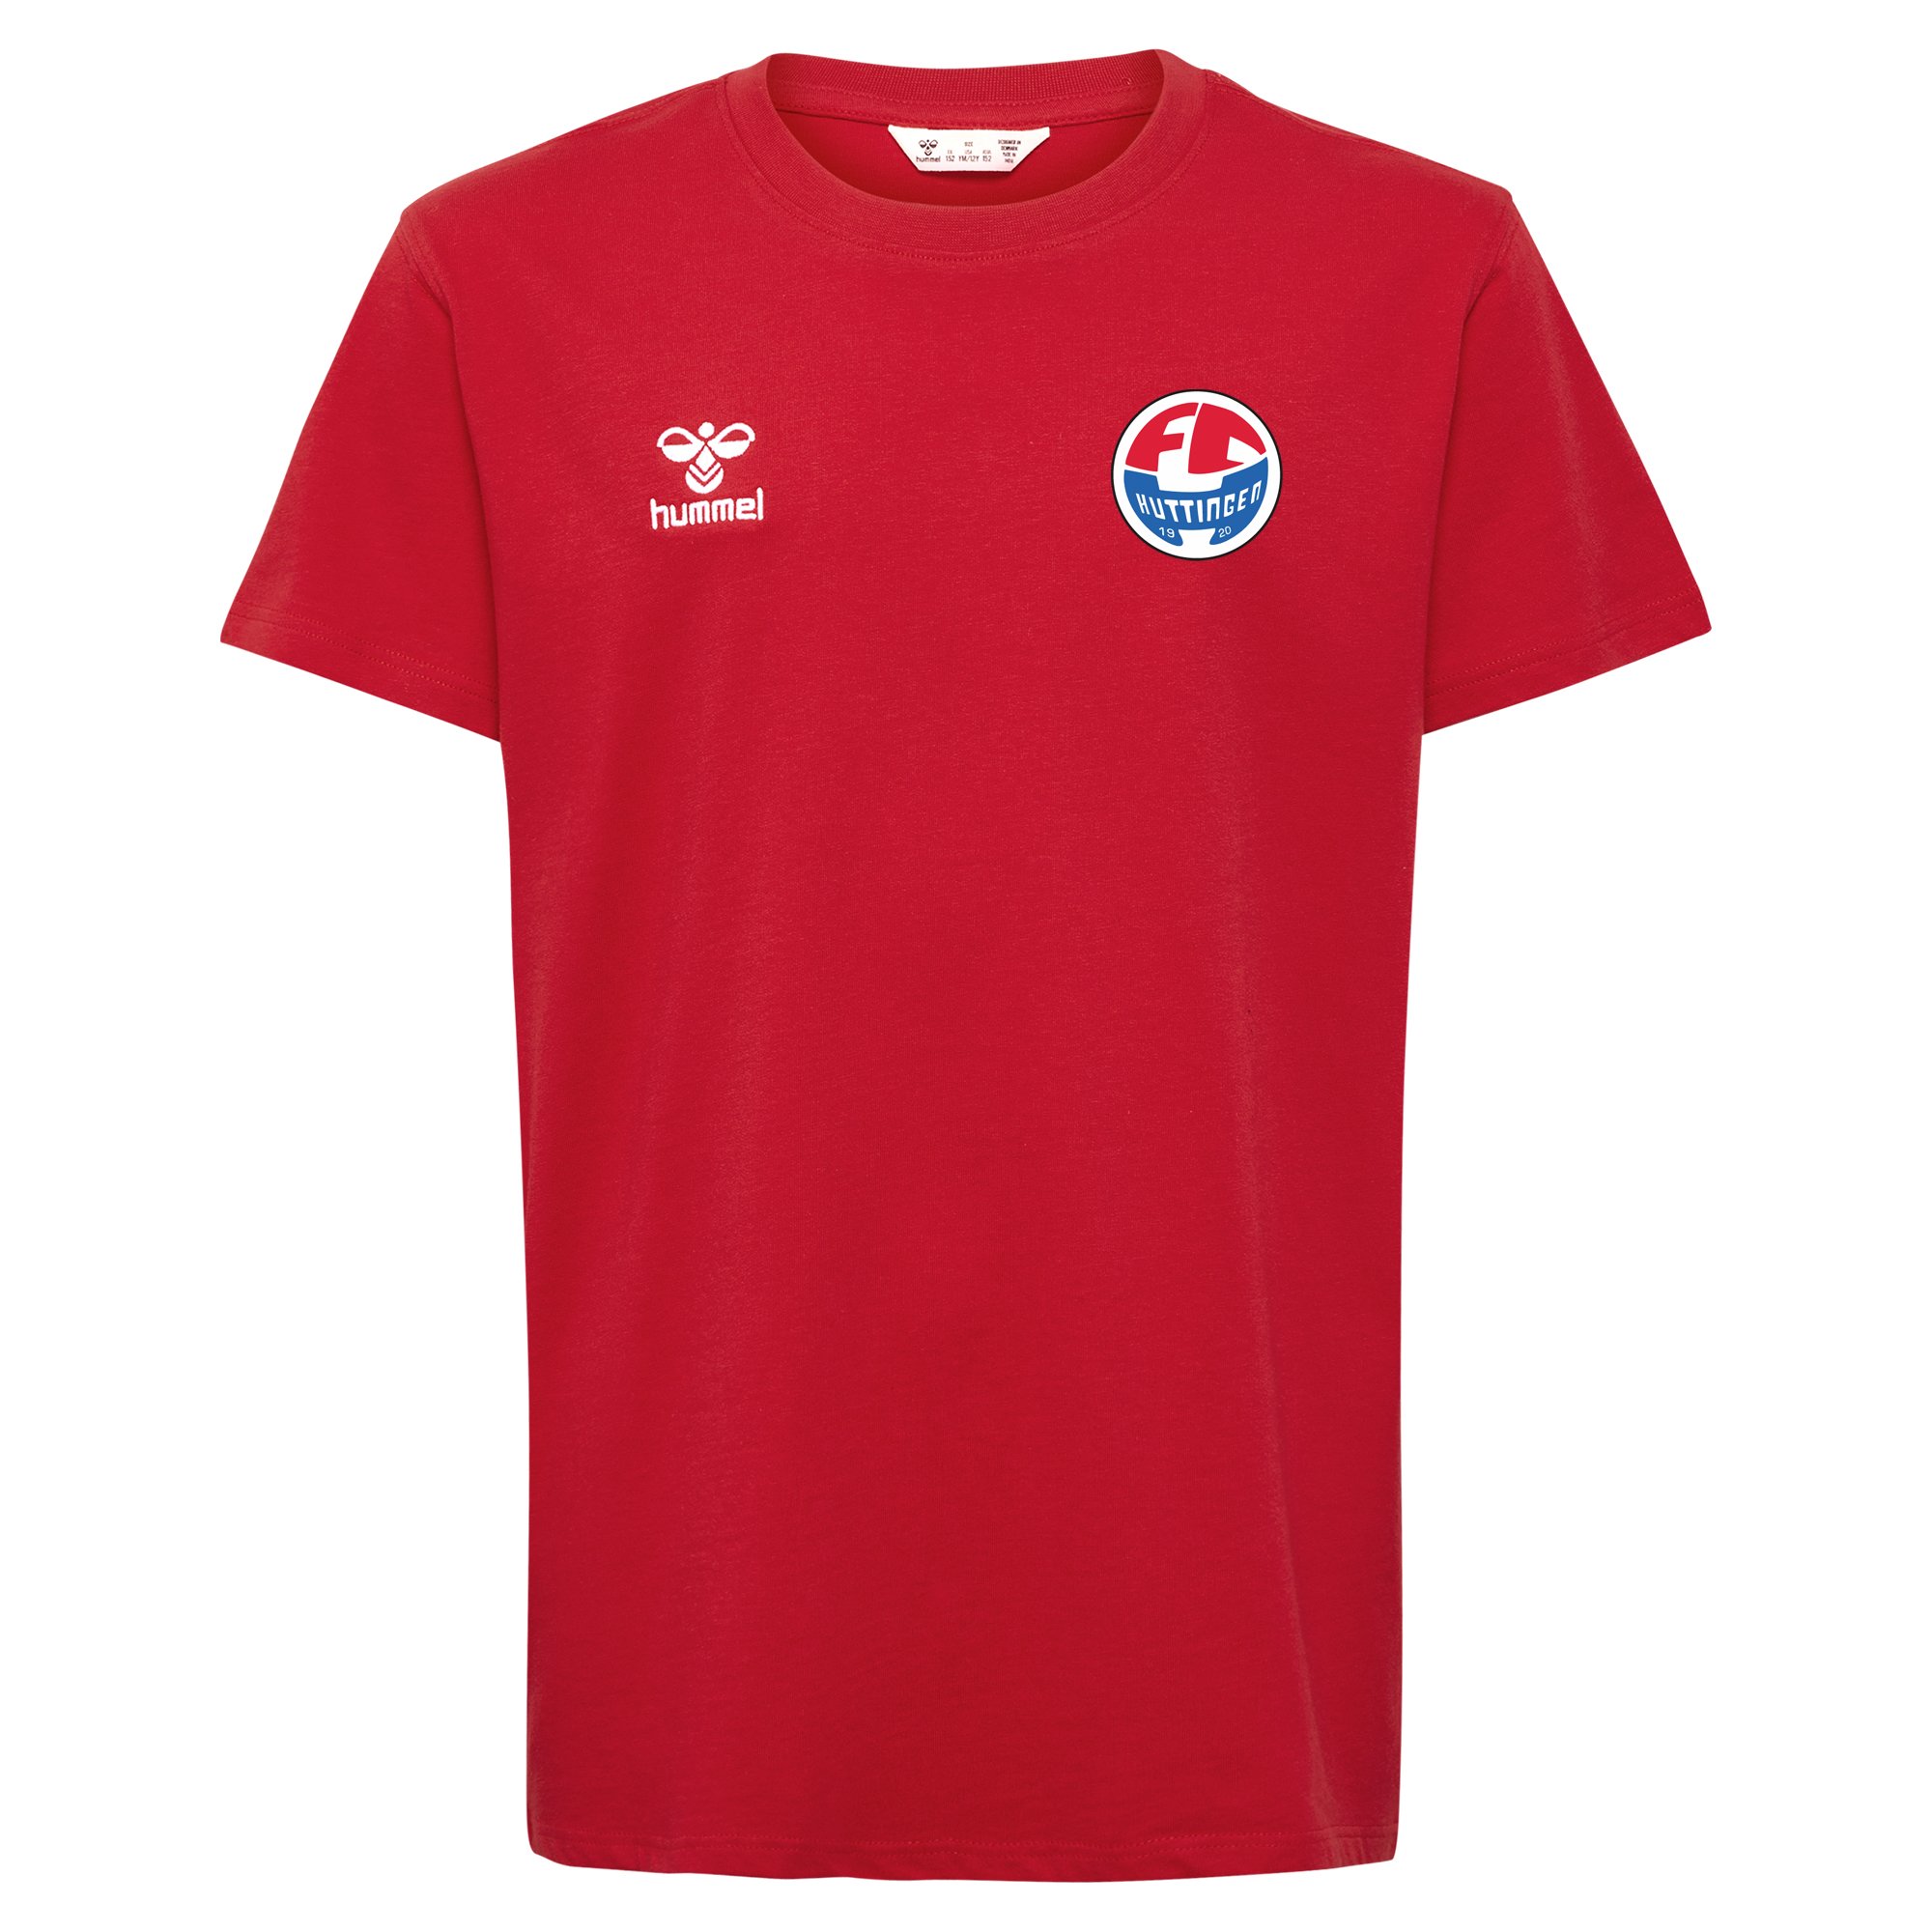 FC Huttingen T-Shirt